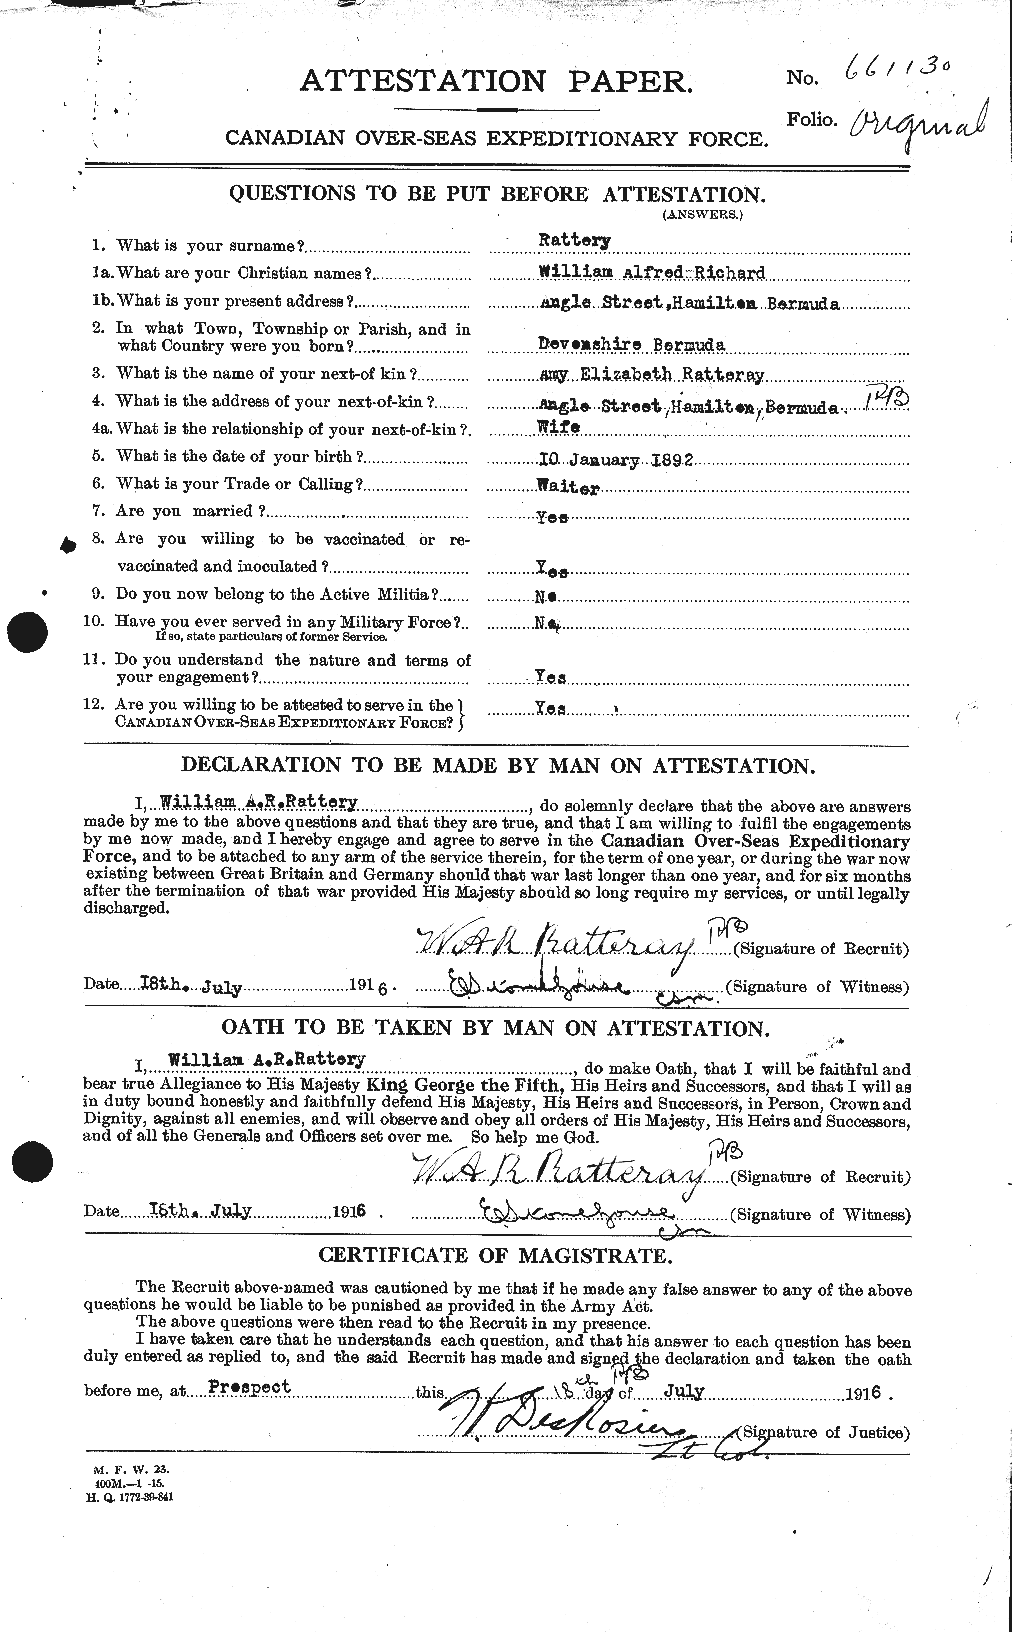 Dossiers du Personnel de la Première Guerre mondiale - CEC 595672a